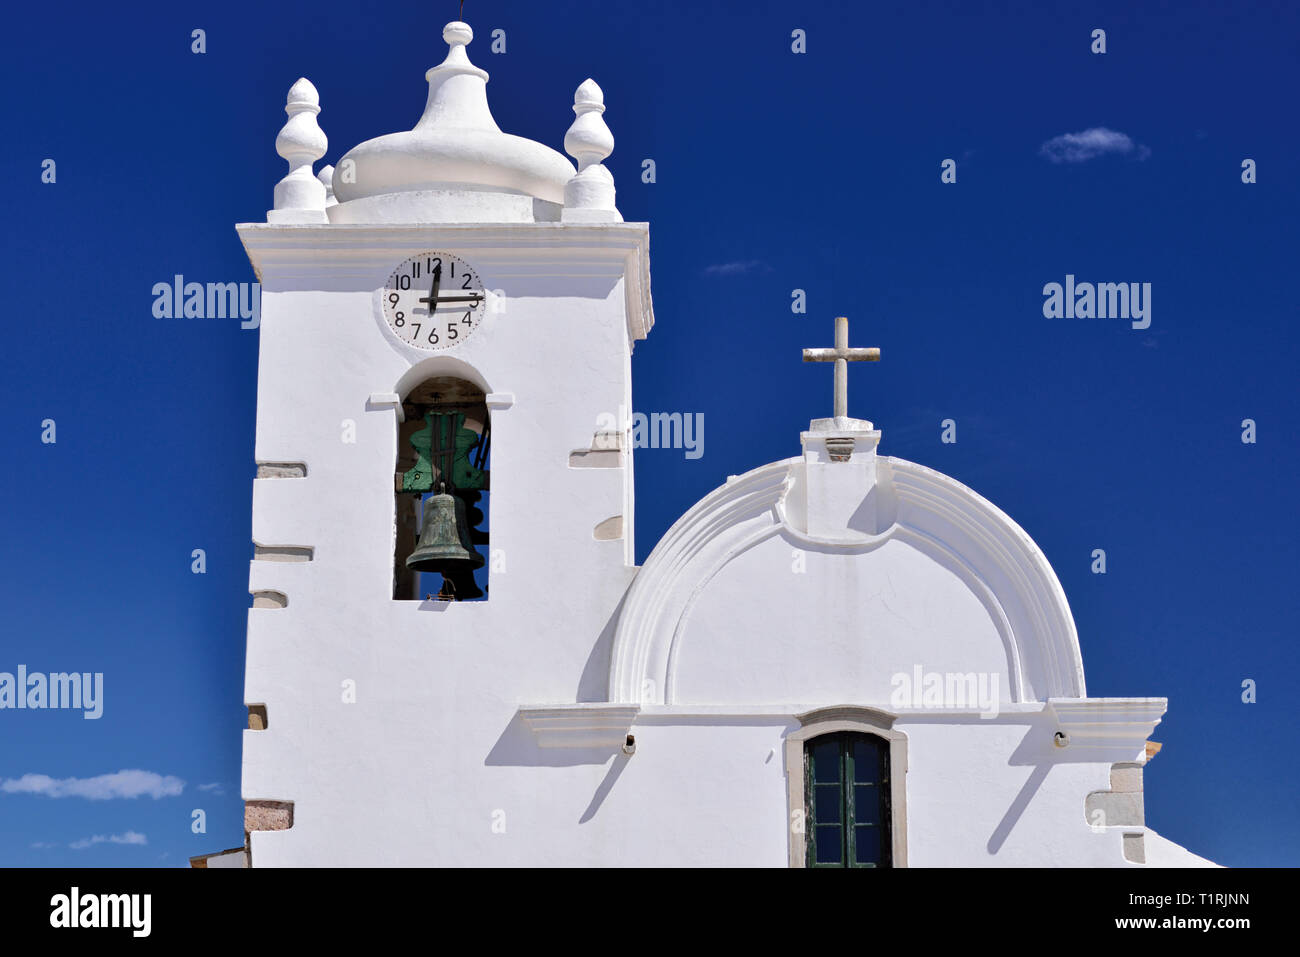 Haut d'une église médiévale lumineux blanc avec clocher à contraste ciel bleu à une journée ensoleillée Banque D'Images